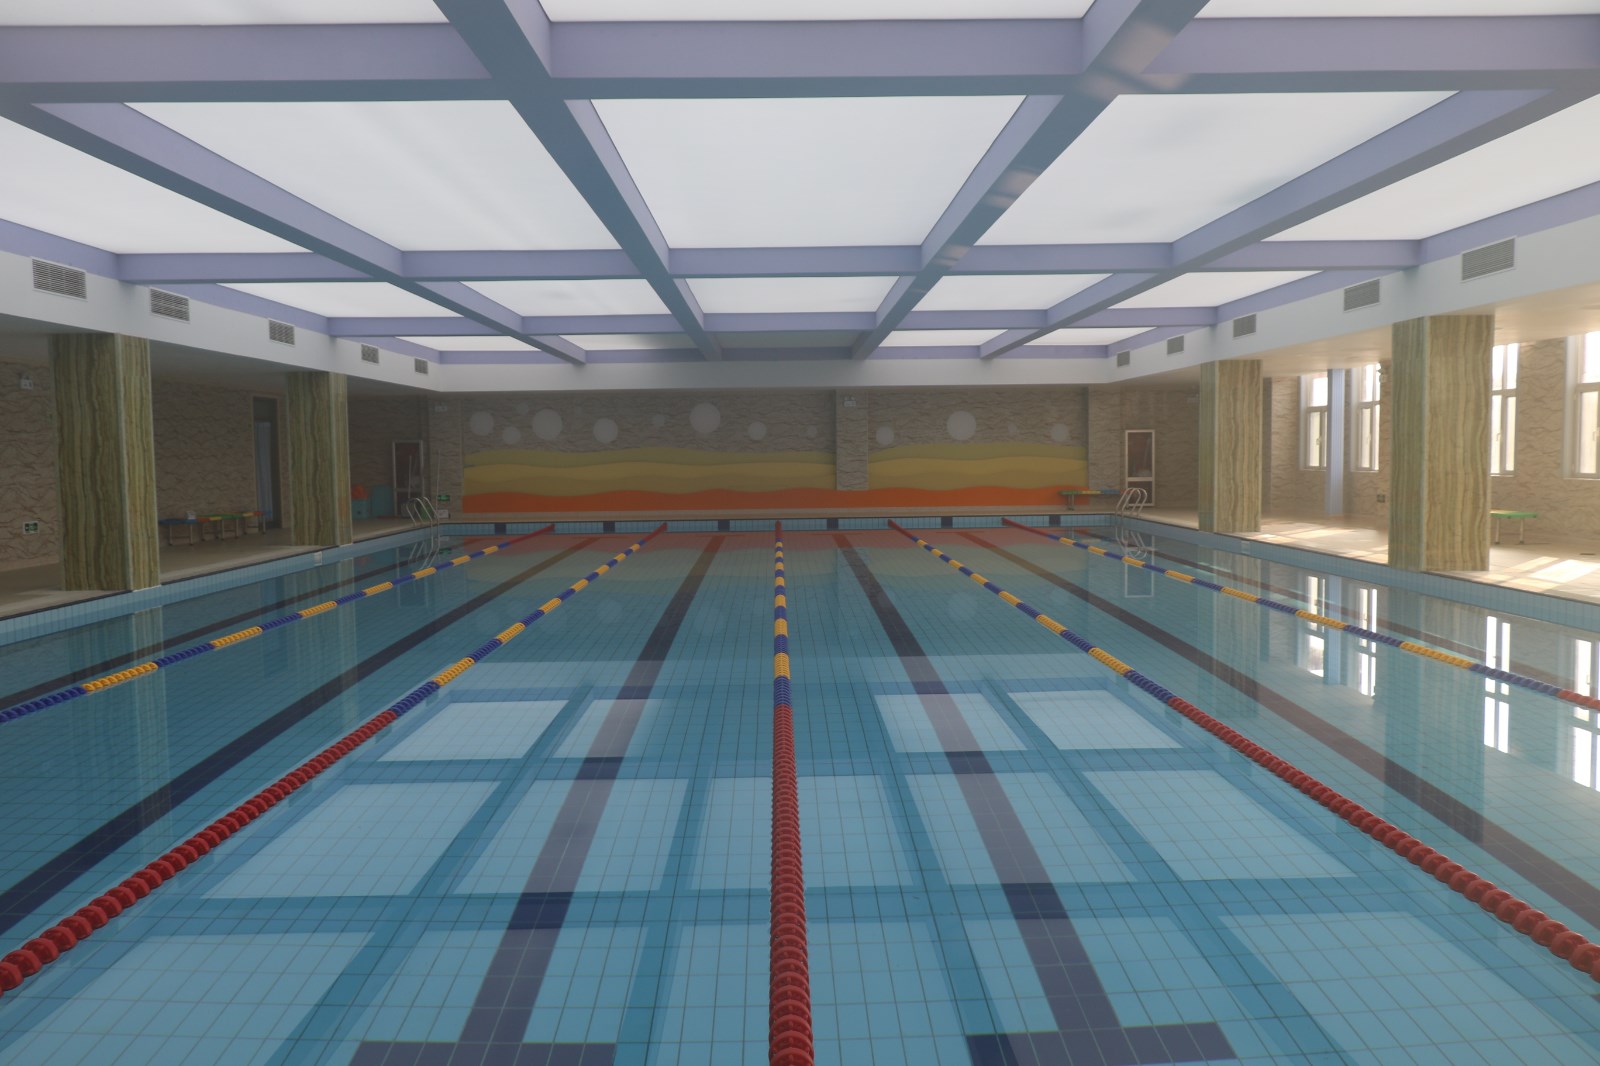 厦门游泳馆有哪些 厦门好的游泳馆推荐-厦门市培训机构服务中心